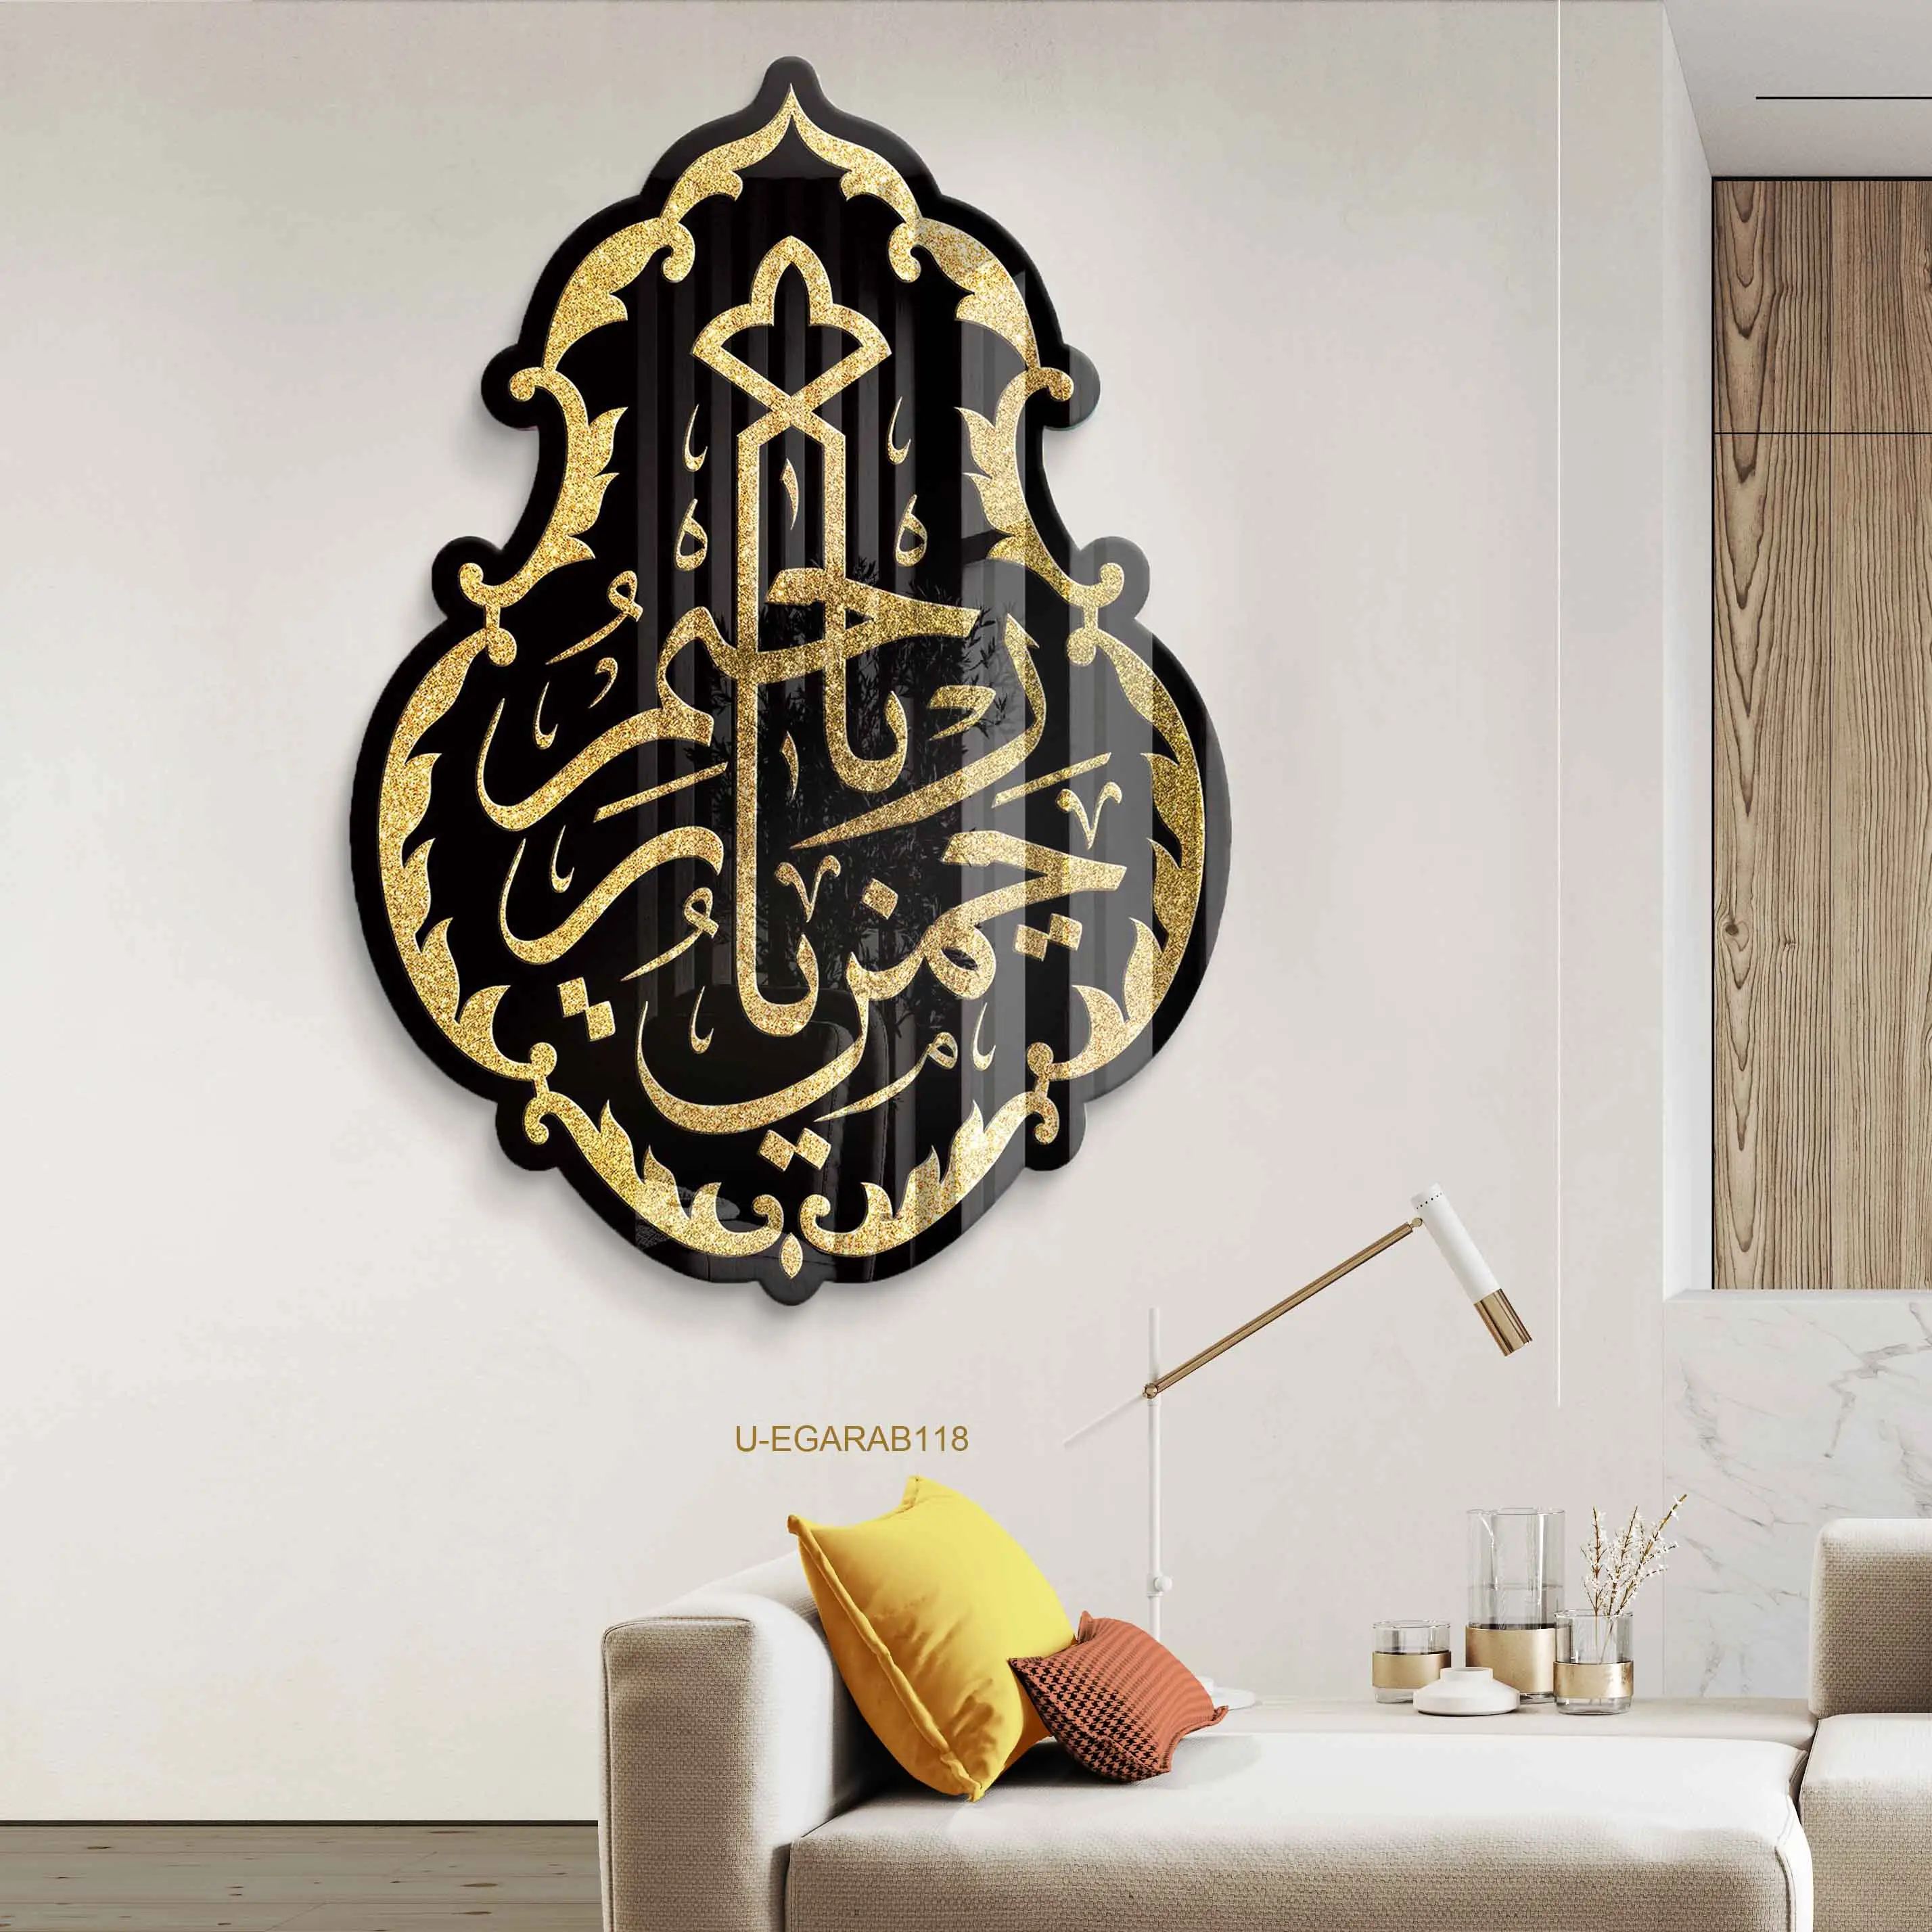 ภาพอะคริลิครูปตัวอิสลามพิมพ์ลายทางศาสนามุสลิมภาพศิลปะผนังสมัยใหม่สำหรับตกแต่งบ้าน